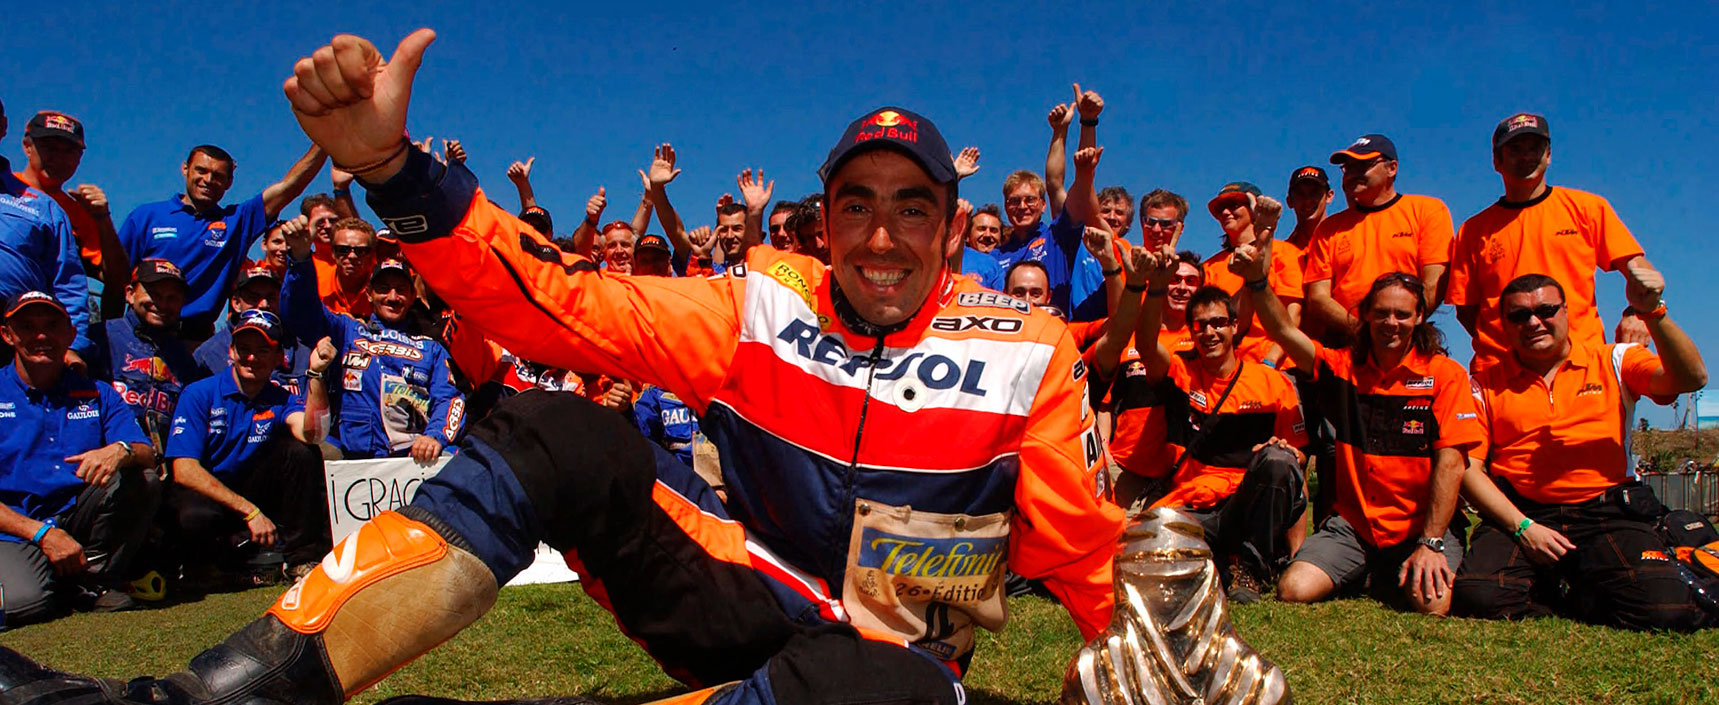 Nani Roma se convirtió ese año en el primer español en ganar el Dakar